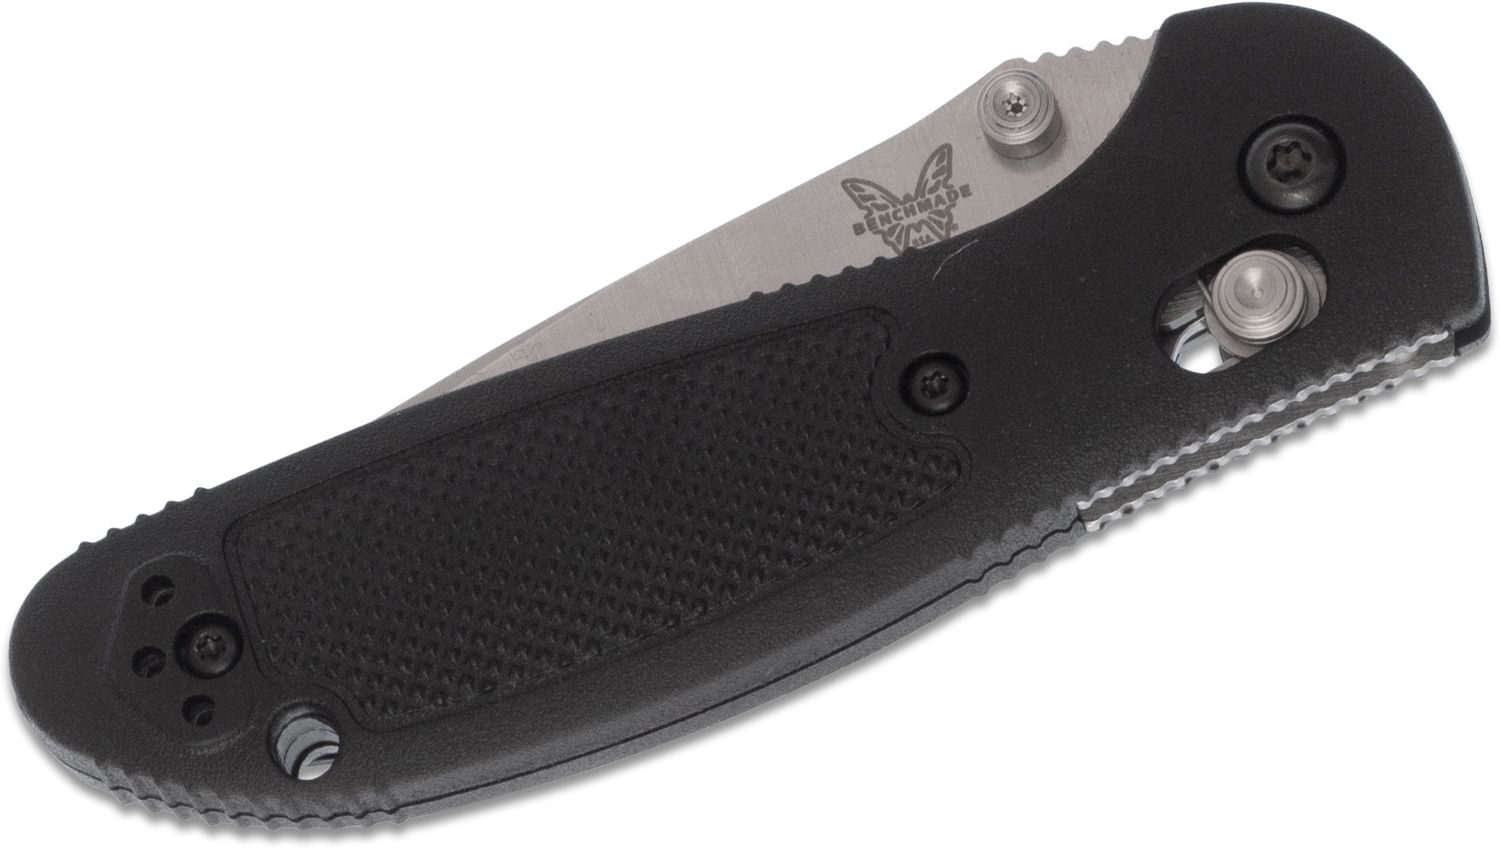 Sharp 556-S30V Mini Griptilian® Drop- Point Knife